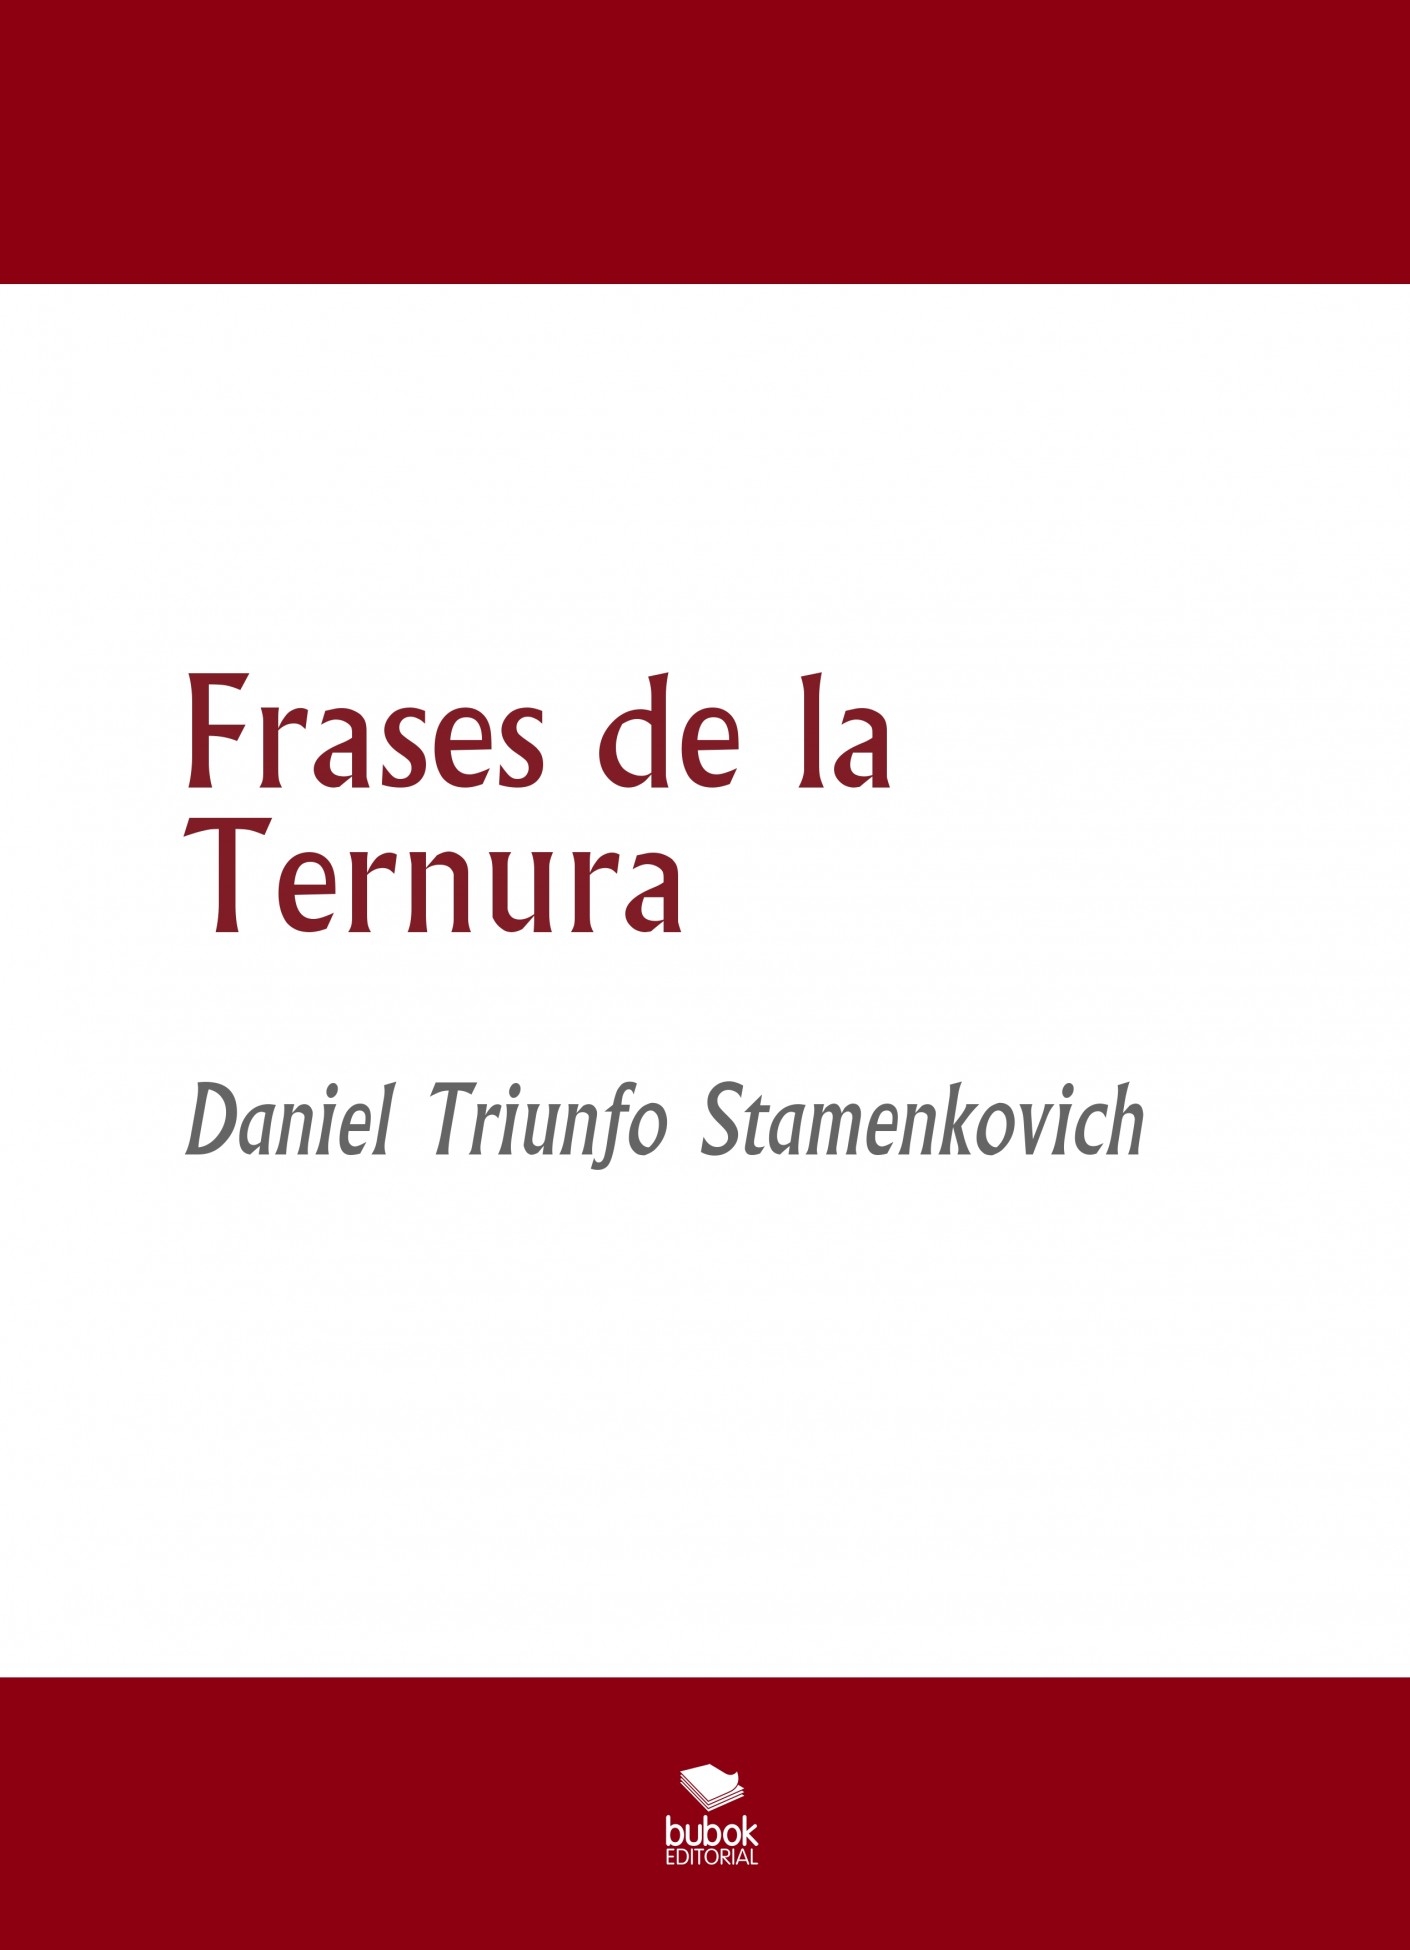 Frases de la Ternura | Daniel Triunfo Stamenkovich - Bubok